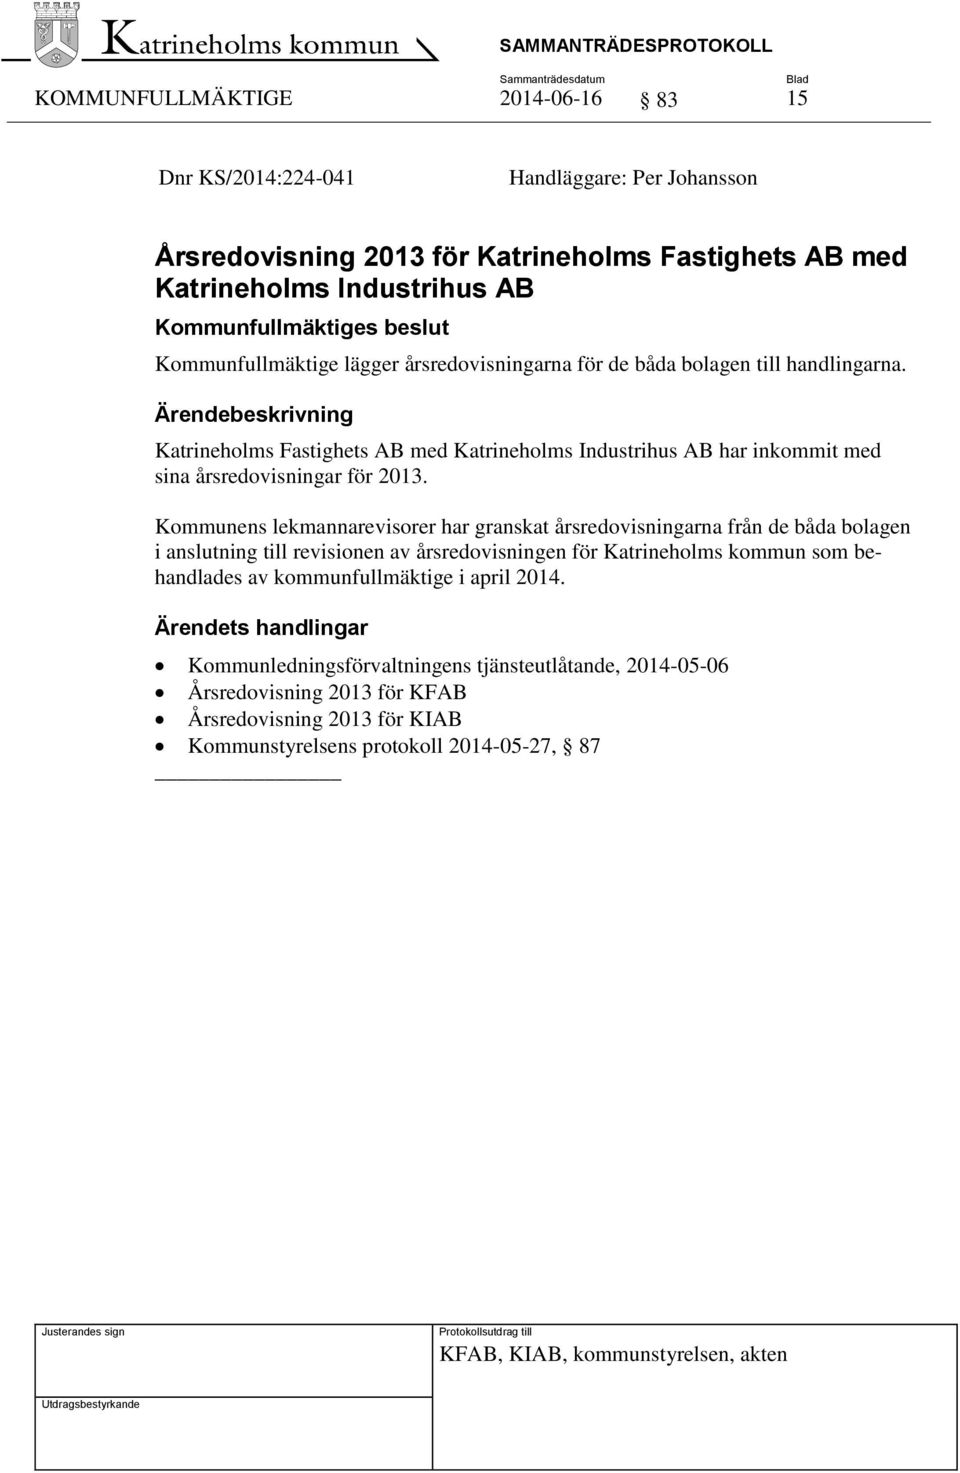 Kommunens lekmannarevisorer har granskat årsredovisningarna från de båda bolagen i anslutning till revisionen av årsredovisningen för Katrineholms kommun som behandlades av kommunfullmäktige i